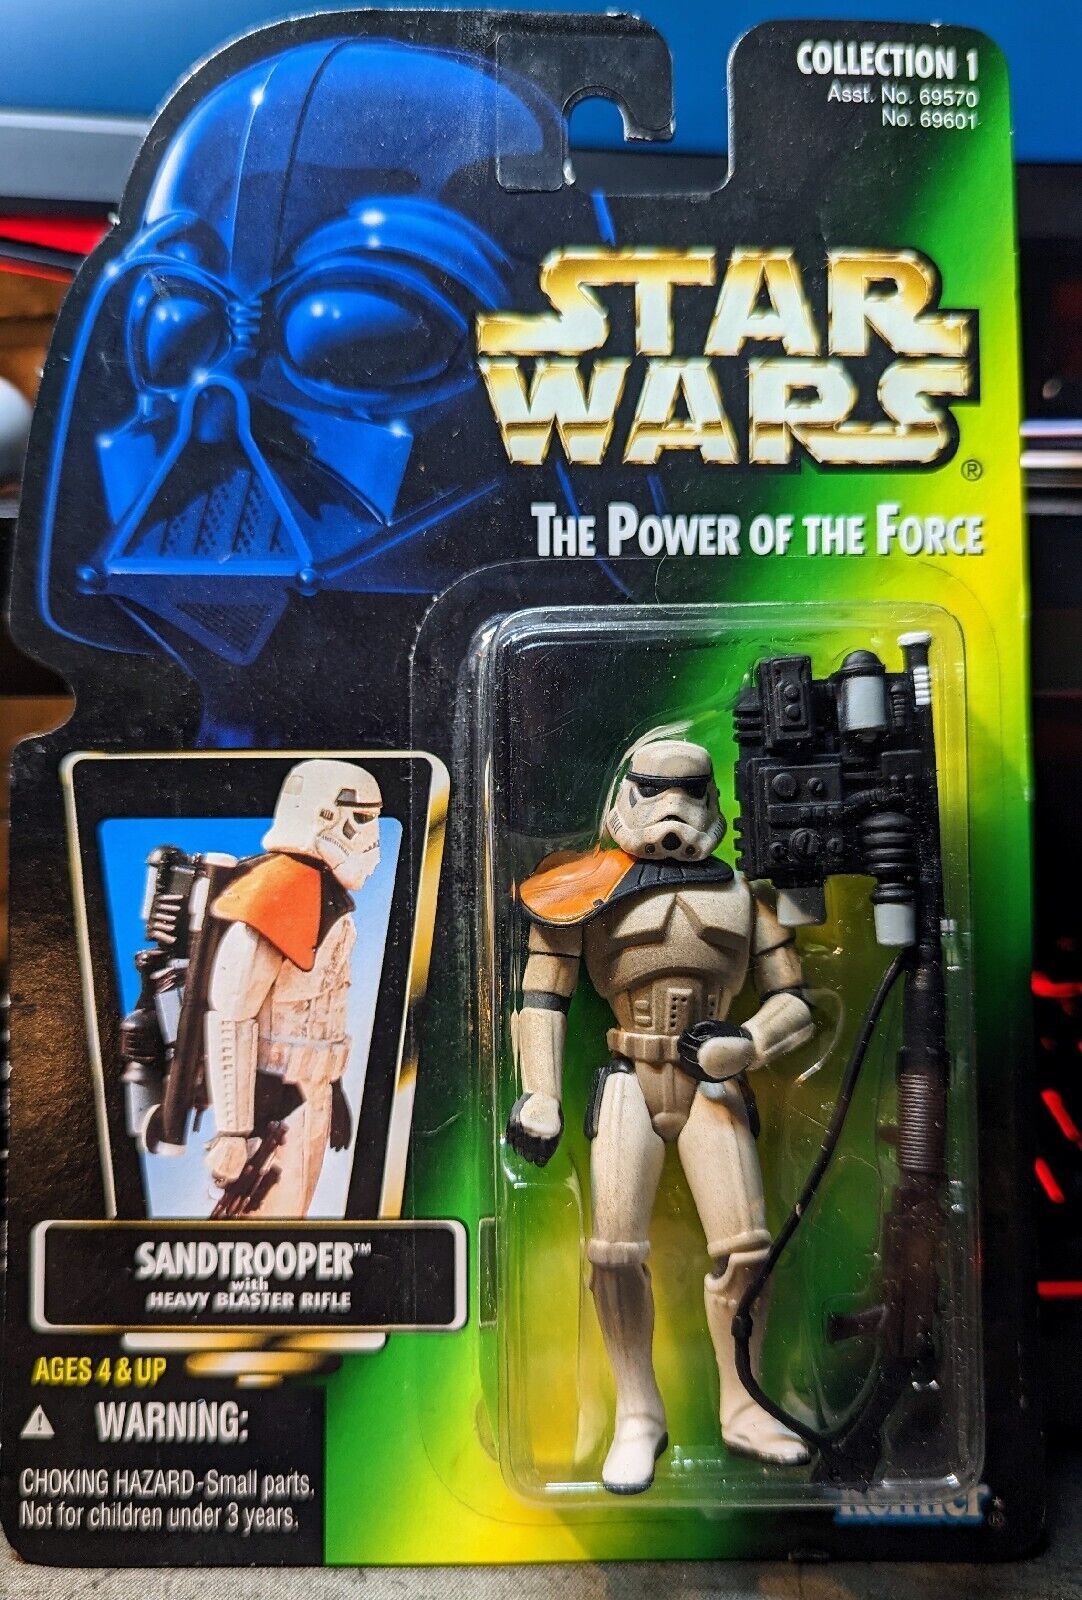 Star Wars Sandtrooper Power of the force POTF